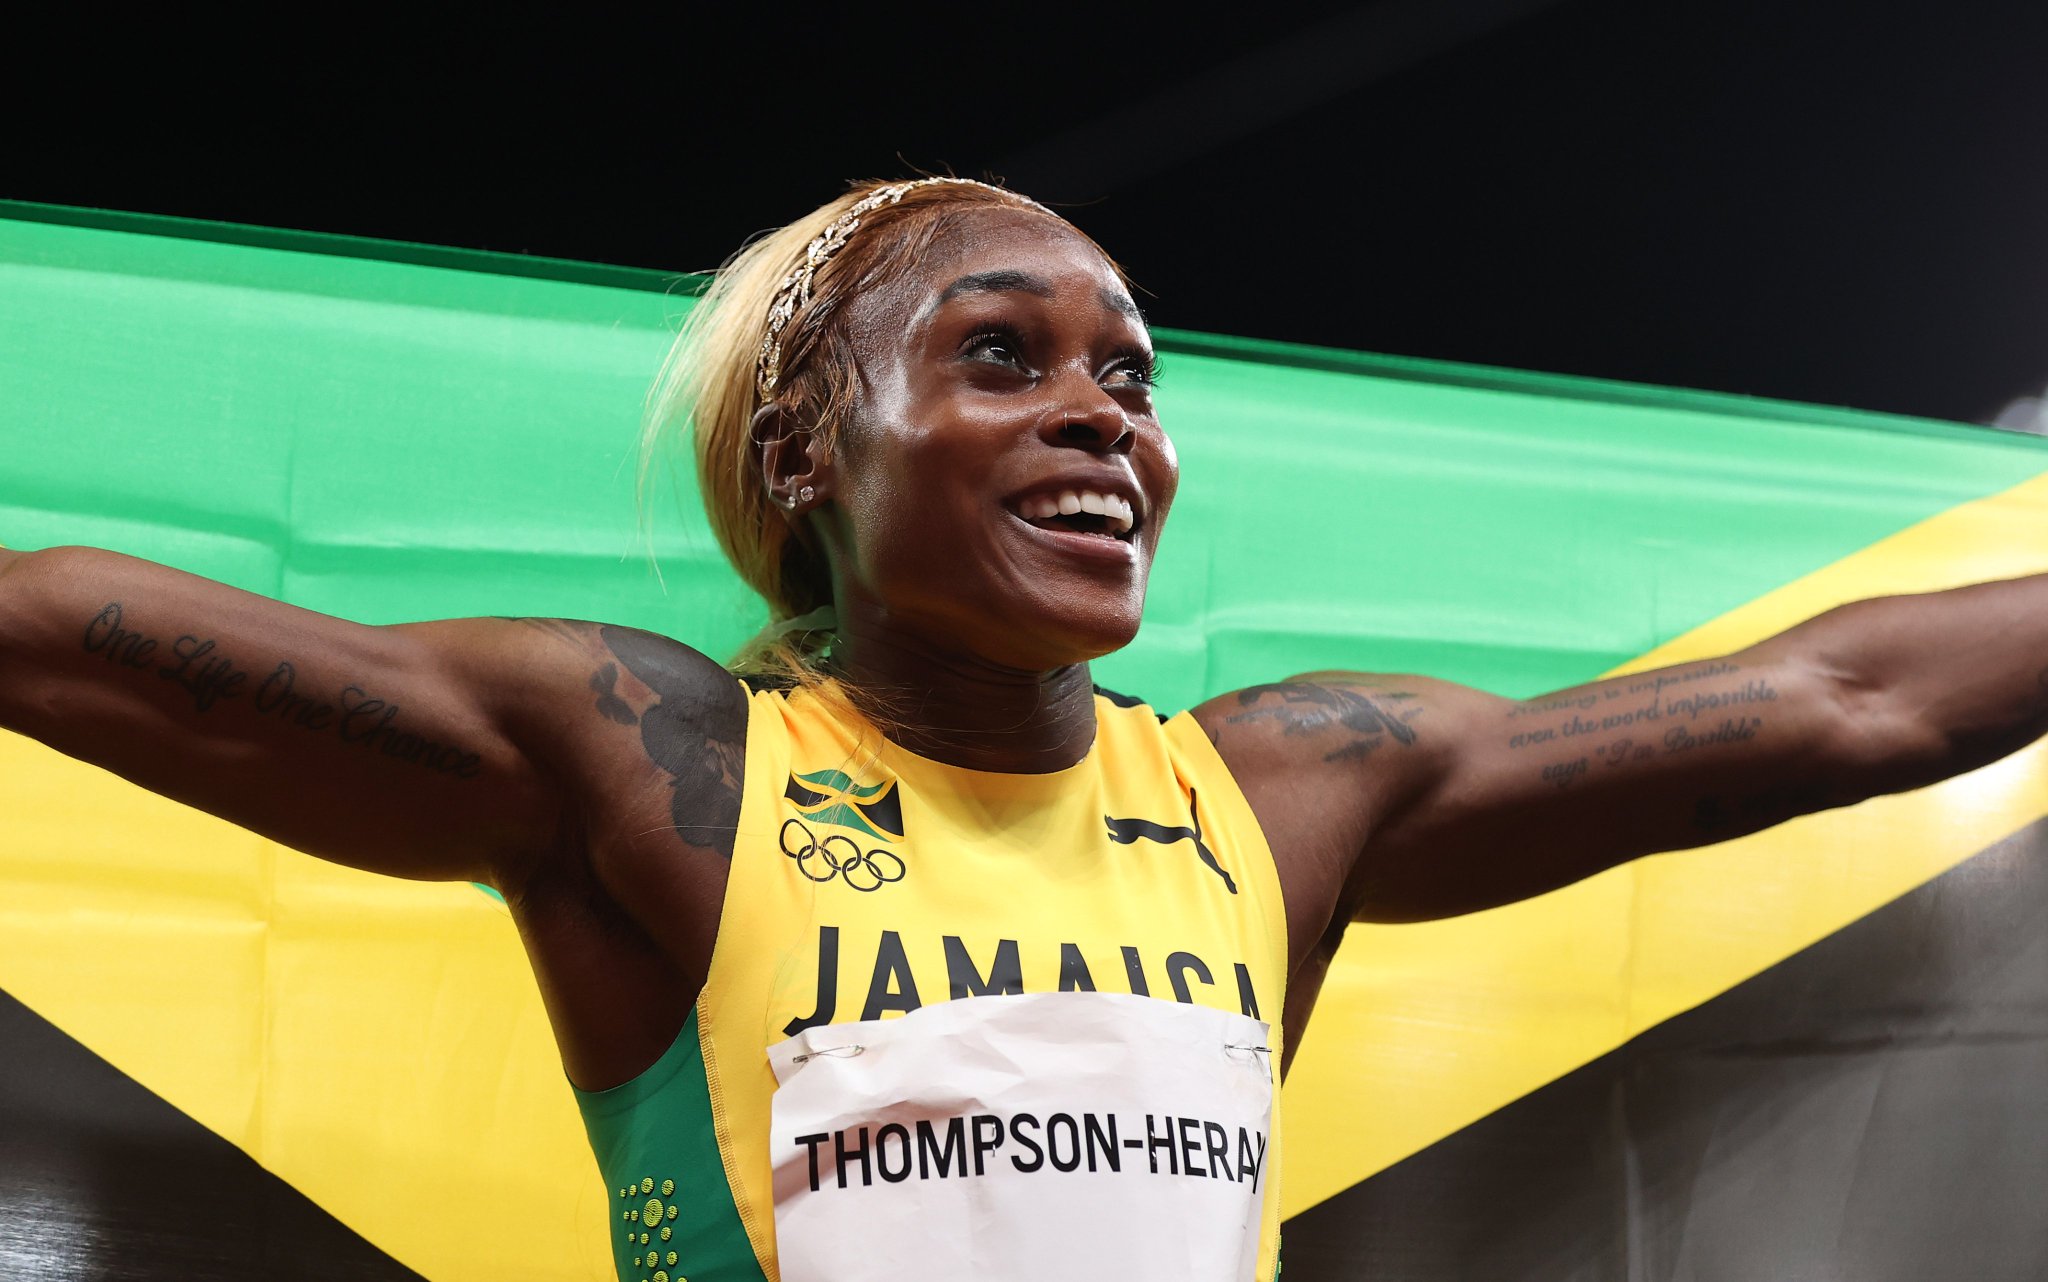 オリンピック 陸上競技 女子100m決勝戦 ジャマイカが を独占 優勝したエレイン トンプソン選手は オリンピックレコード Fastelaine Tokyo オリンピック